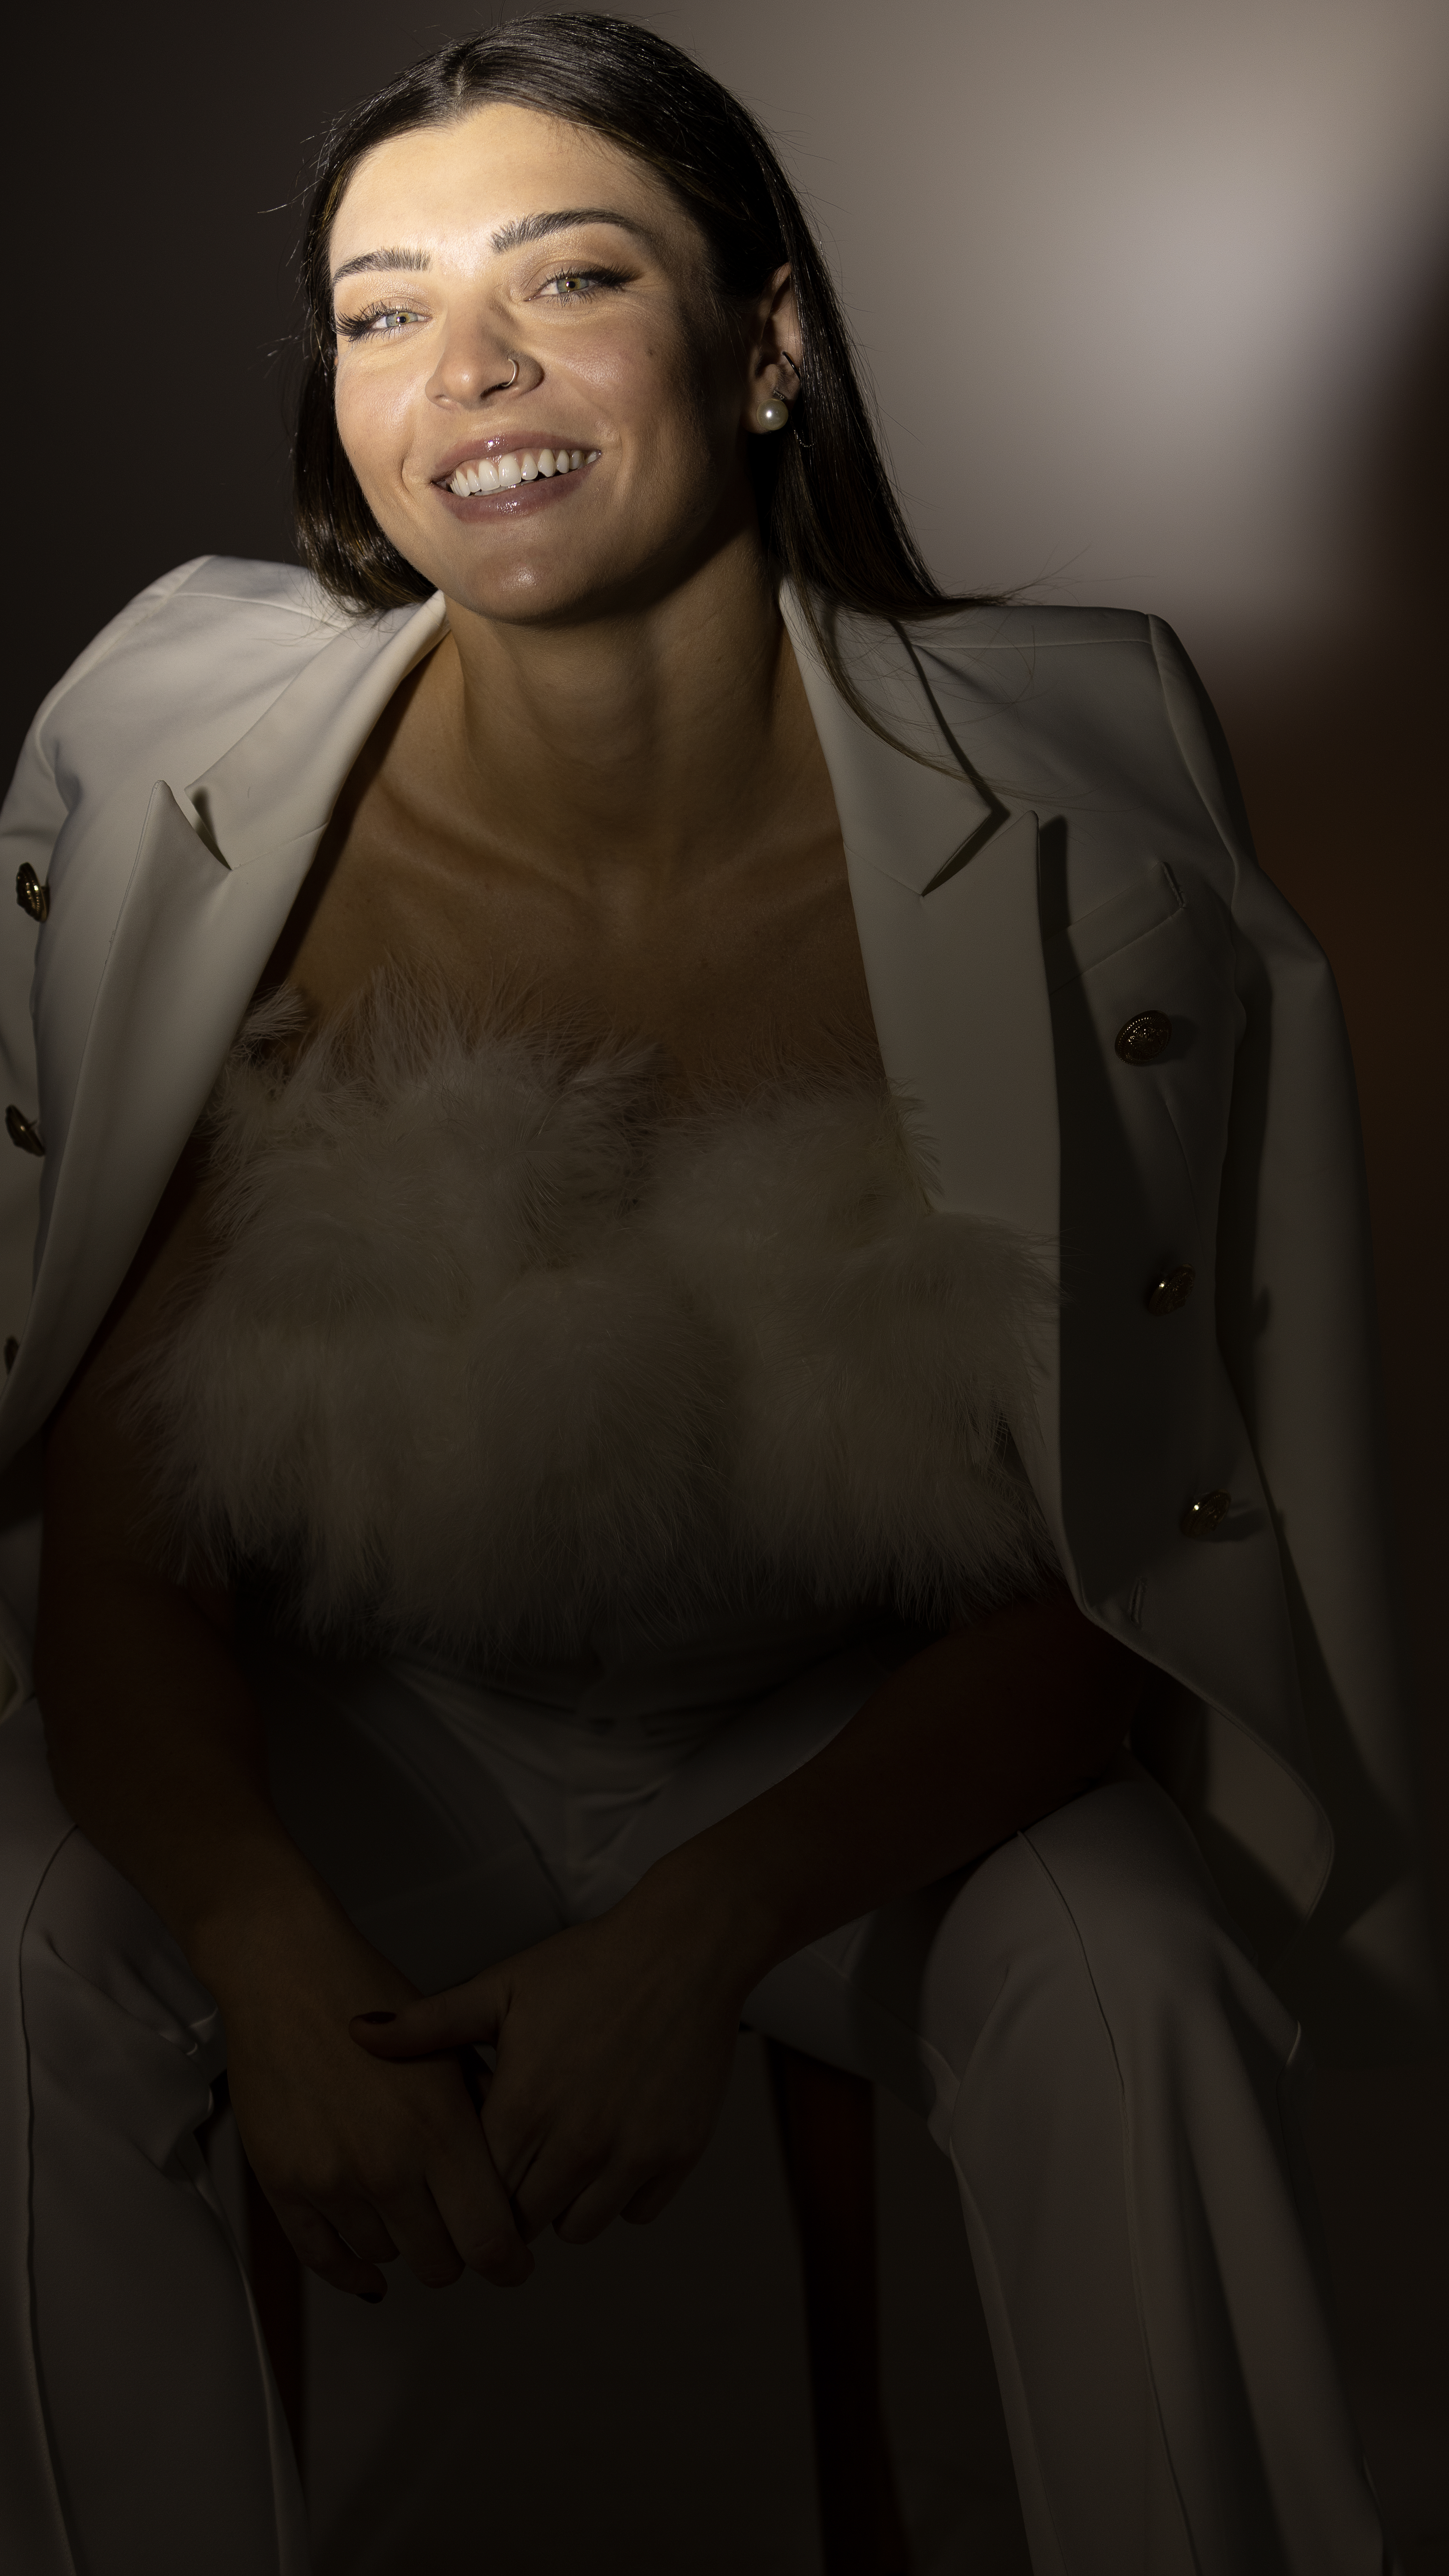 Imagem mostra Rosamaria Montibeller posando sentada em frente a um fundo infinito usando blazer branco e cropped tomara que caia com plumas, enquanto sorri para câmera. A imagem tem uma tonalidade cinza e preta e uma luz clara destacando o rosto de Rosa.